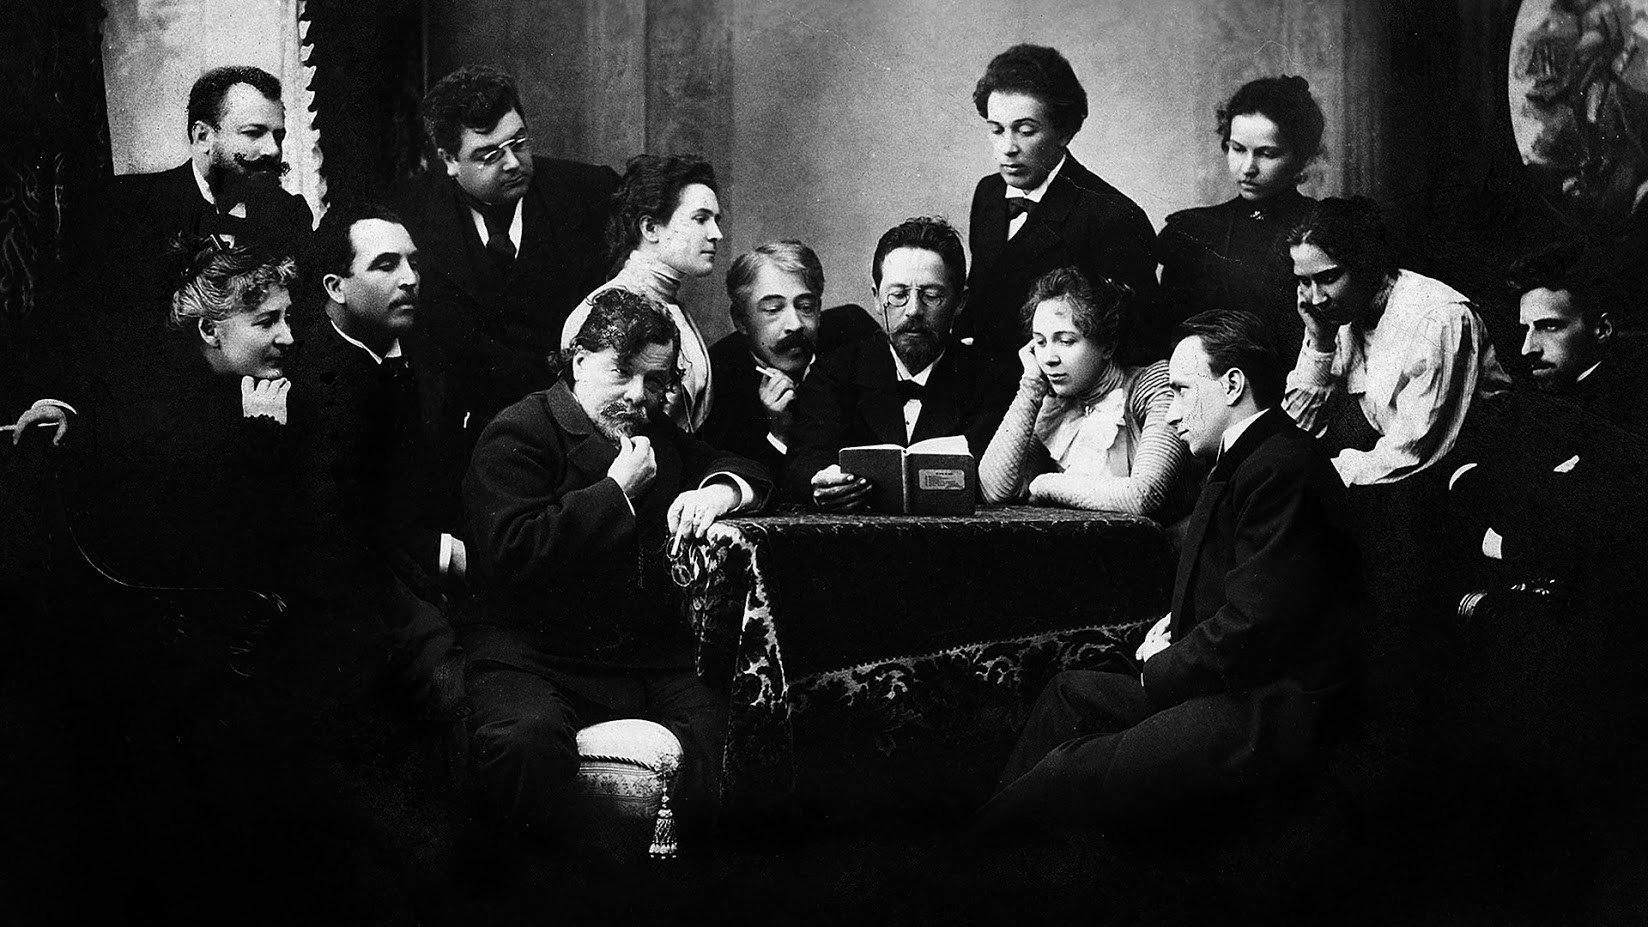 Čehov bere dramo Galeb skupini igralcev in režiserjev: Med njimi so tudi Konstantin Stanislavski (levo od Čehova), igralka in potem žena Olga Knipper (druga levo od Čehova), Vsevolod Mejerhold (desno) in Vladimir Dančenko (stoji na levi)